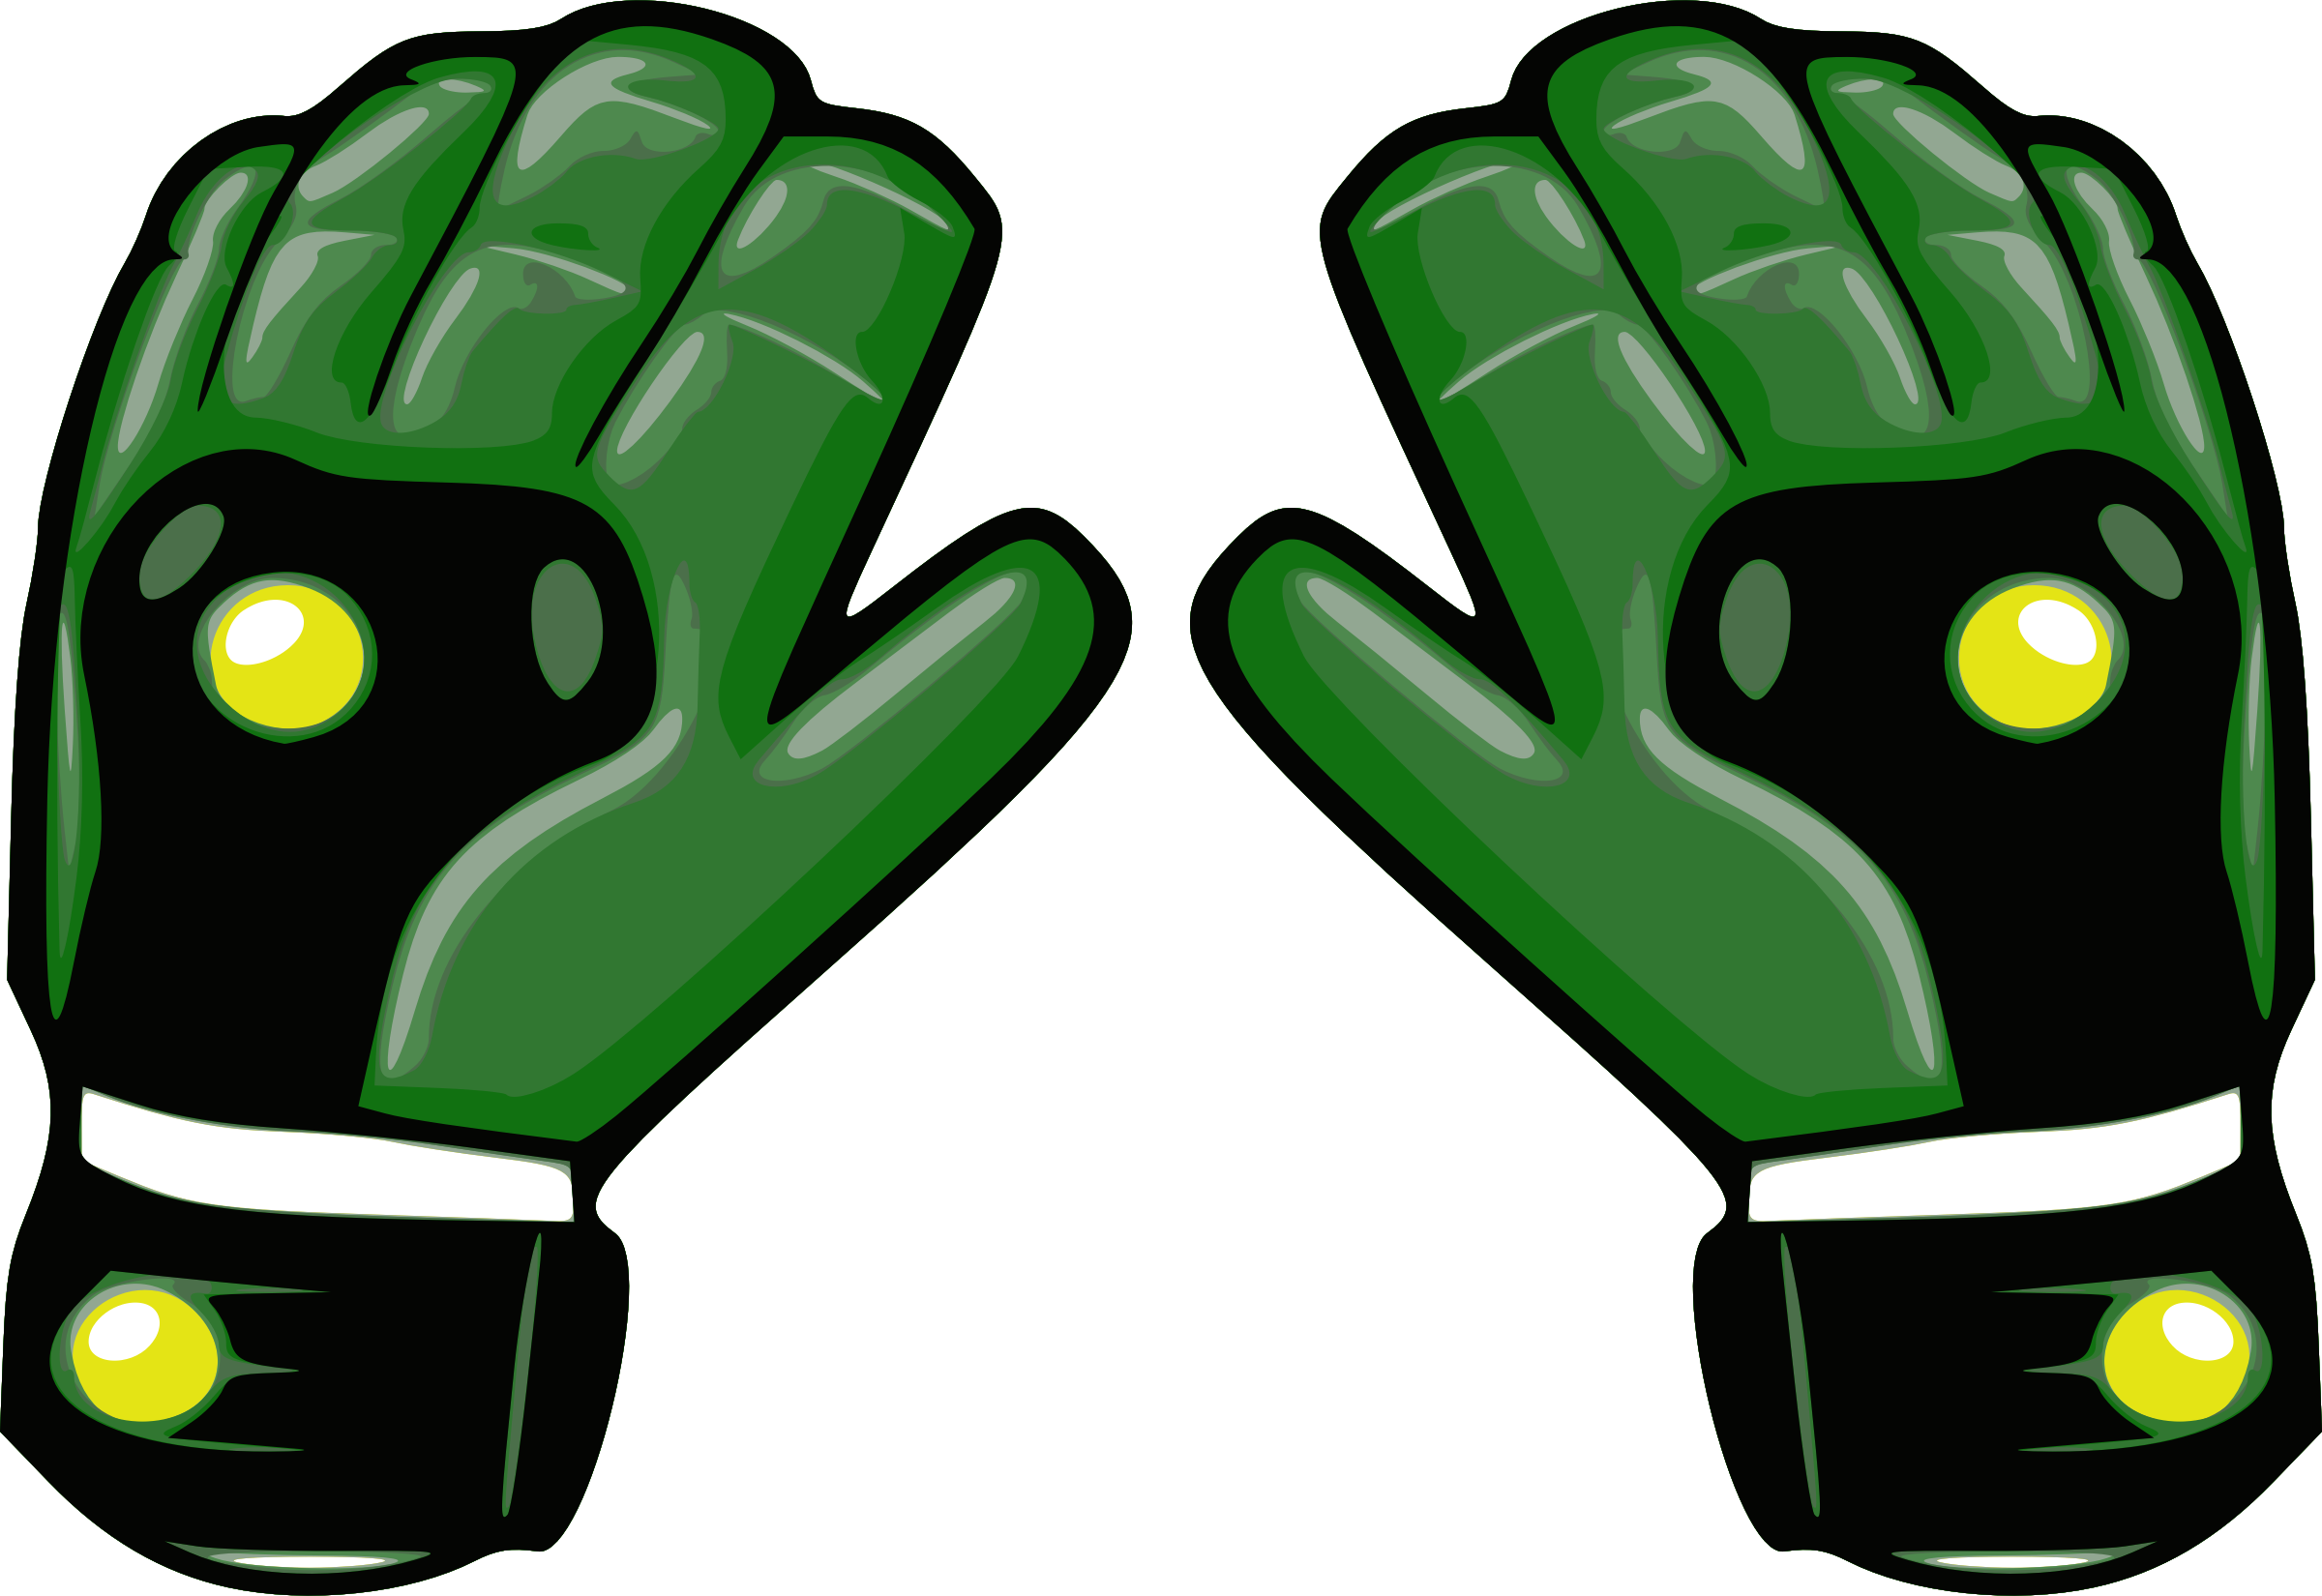 glove clipart soccer glove